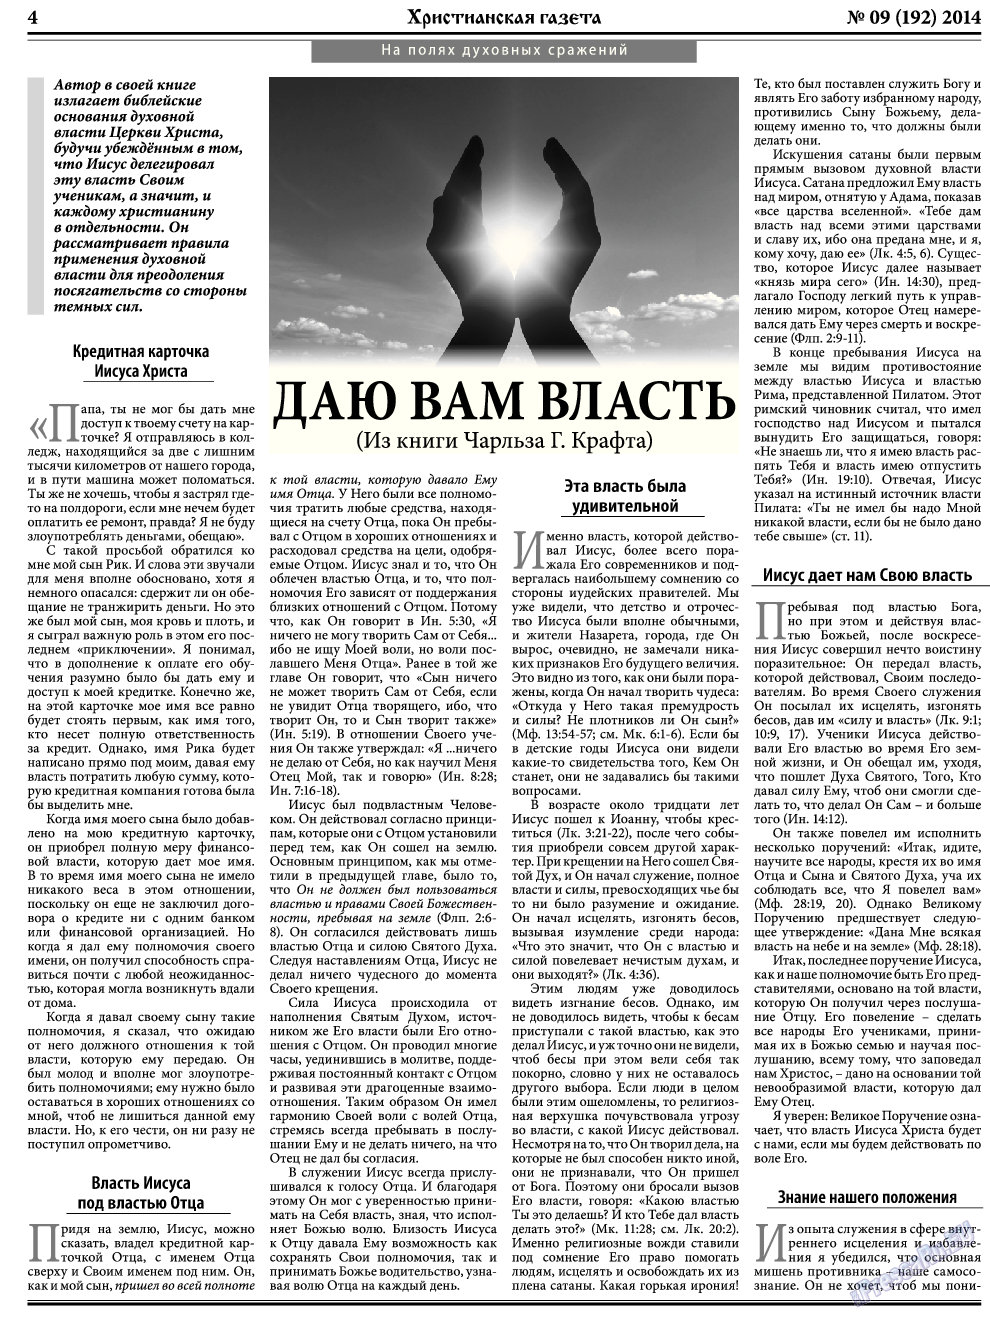 Христианская газета, газета. 2014 №9 стр.4